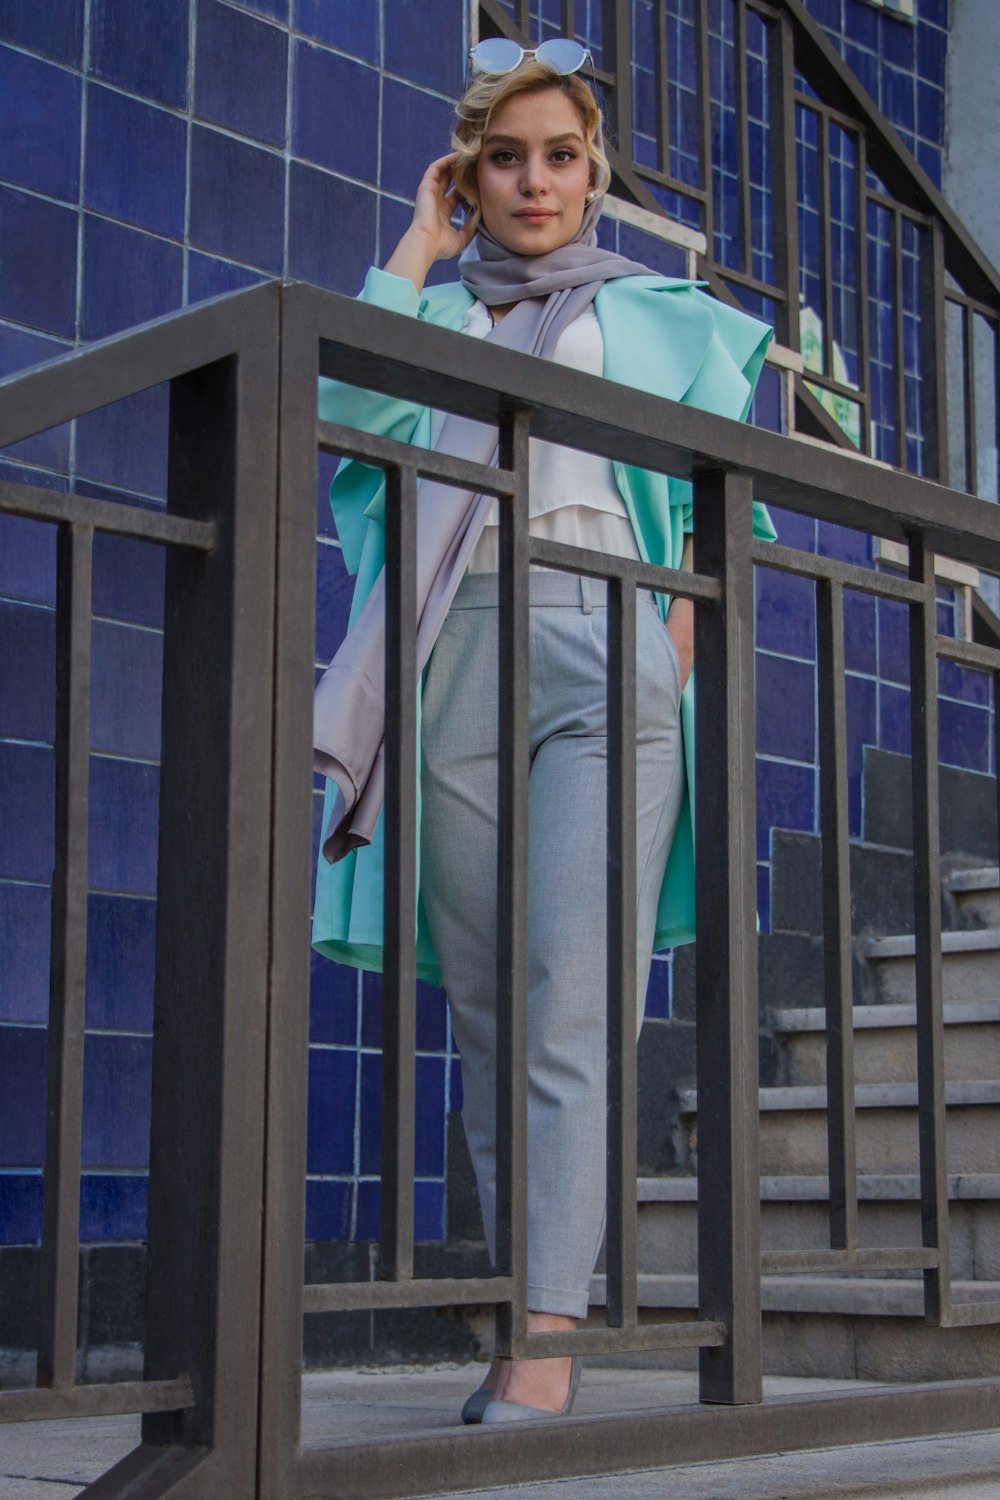 person in gray pants standing beside blue metal railings